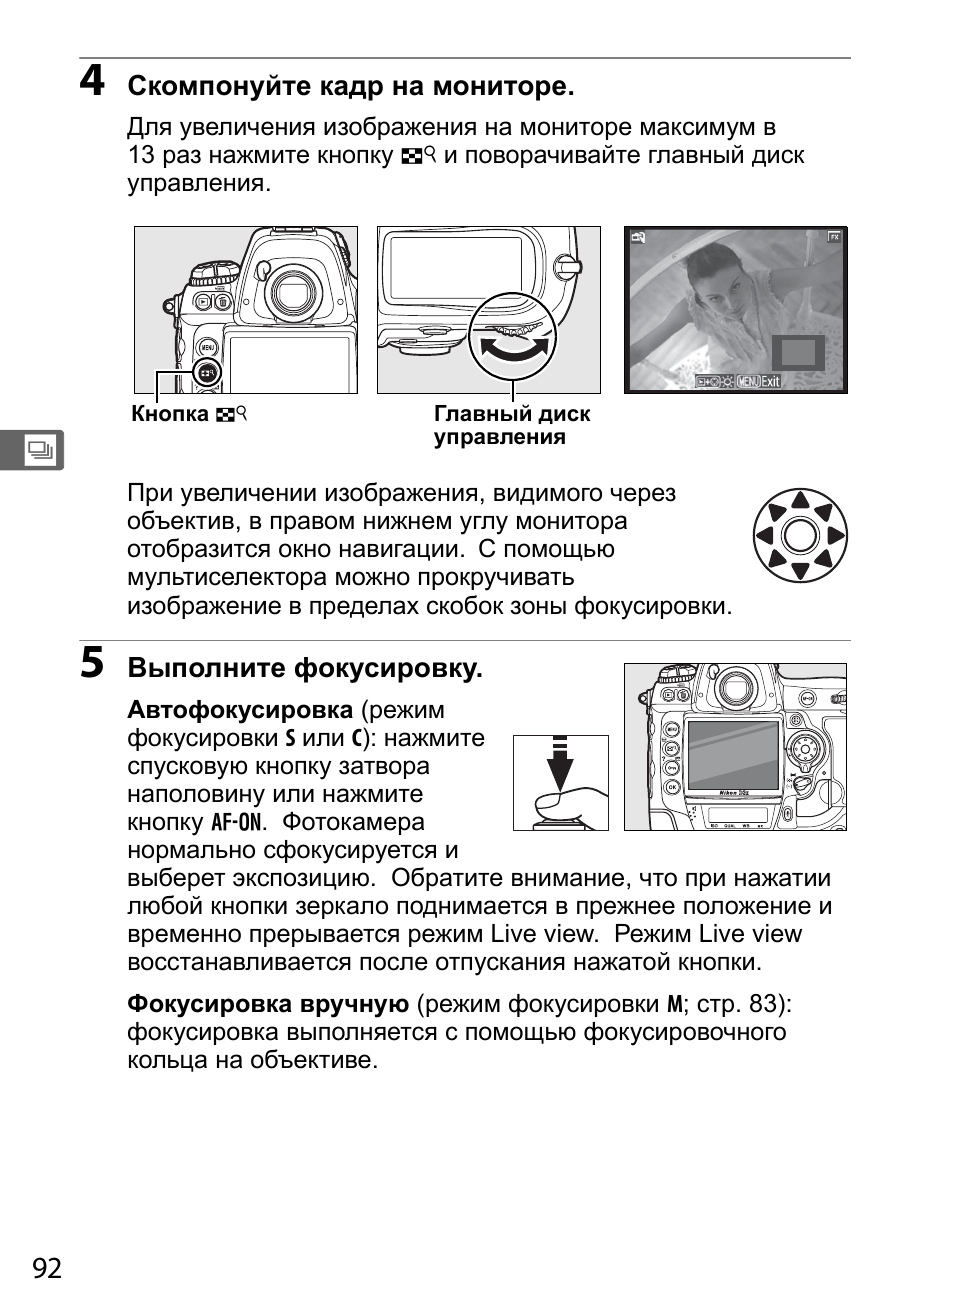 Инструкция по эксплуатации Nikon D3X | Страница 118 / 476